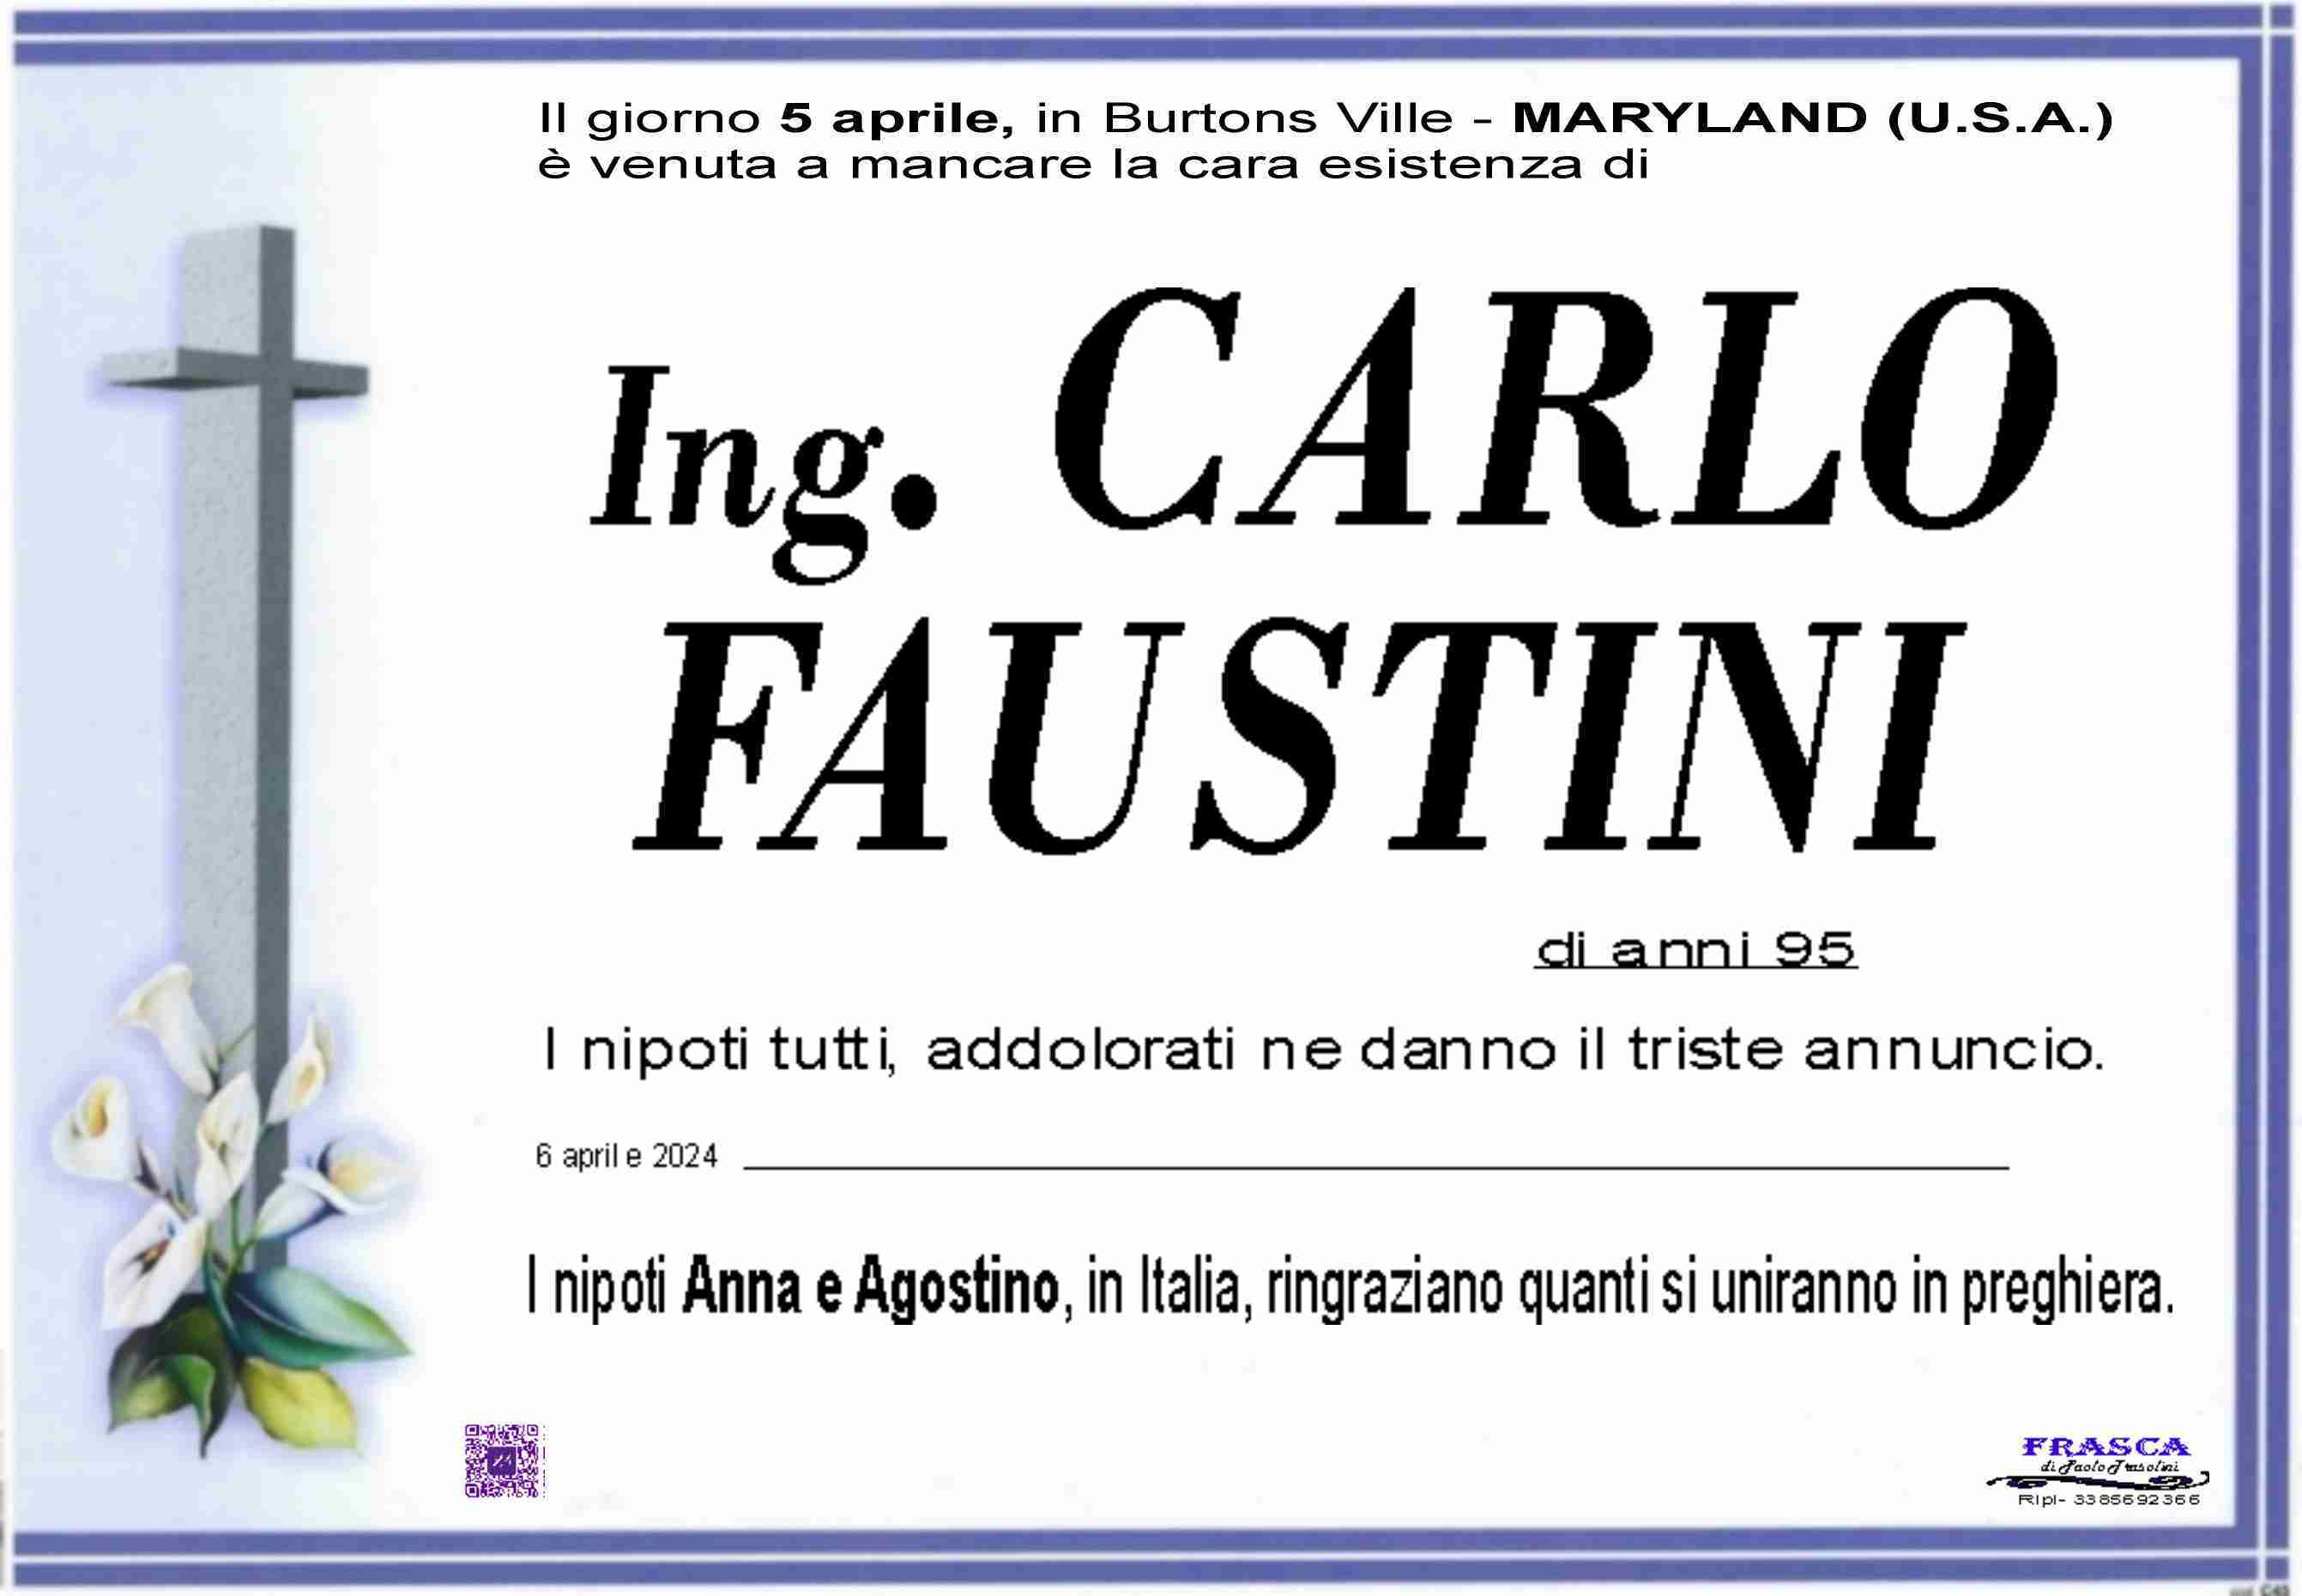 Carlo Faustini